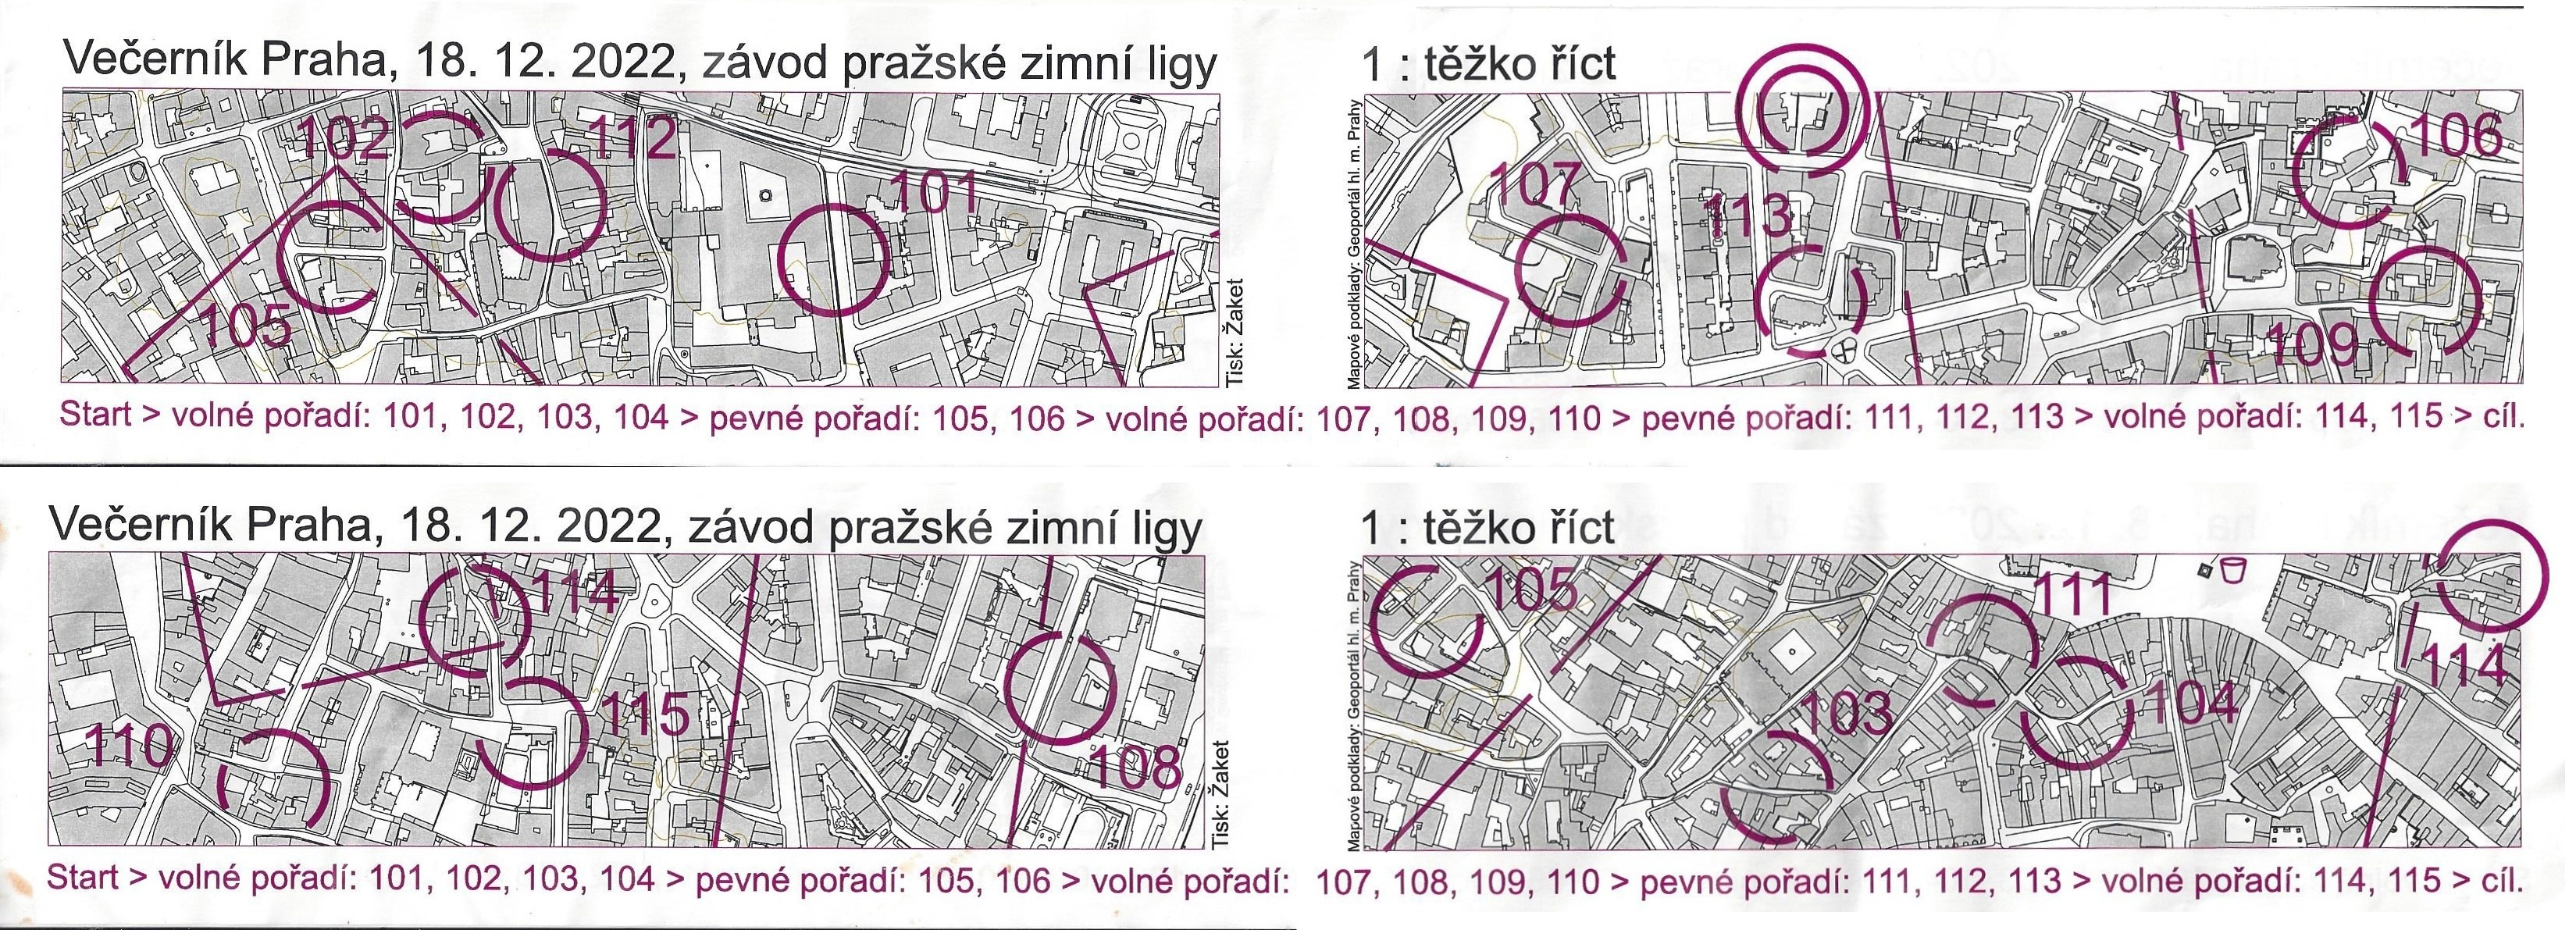 Večeník Praha 2022 - Staré město (18/12/2022)